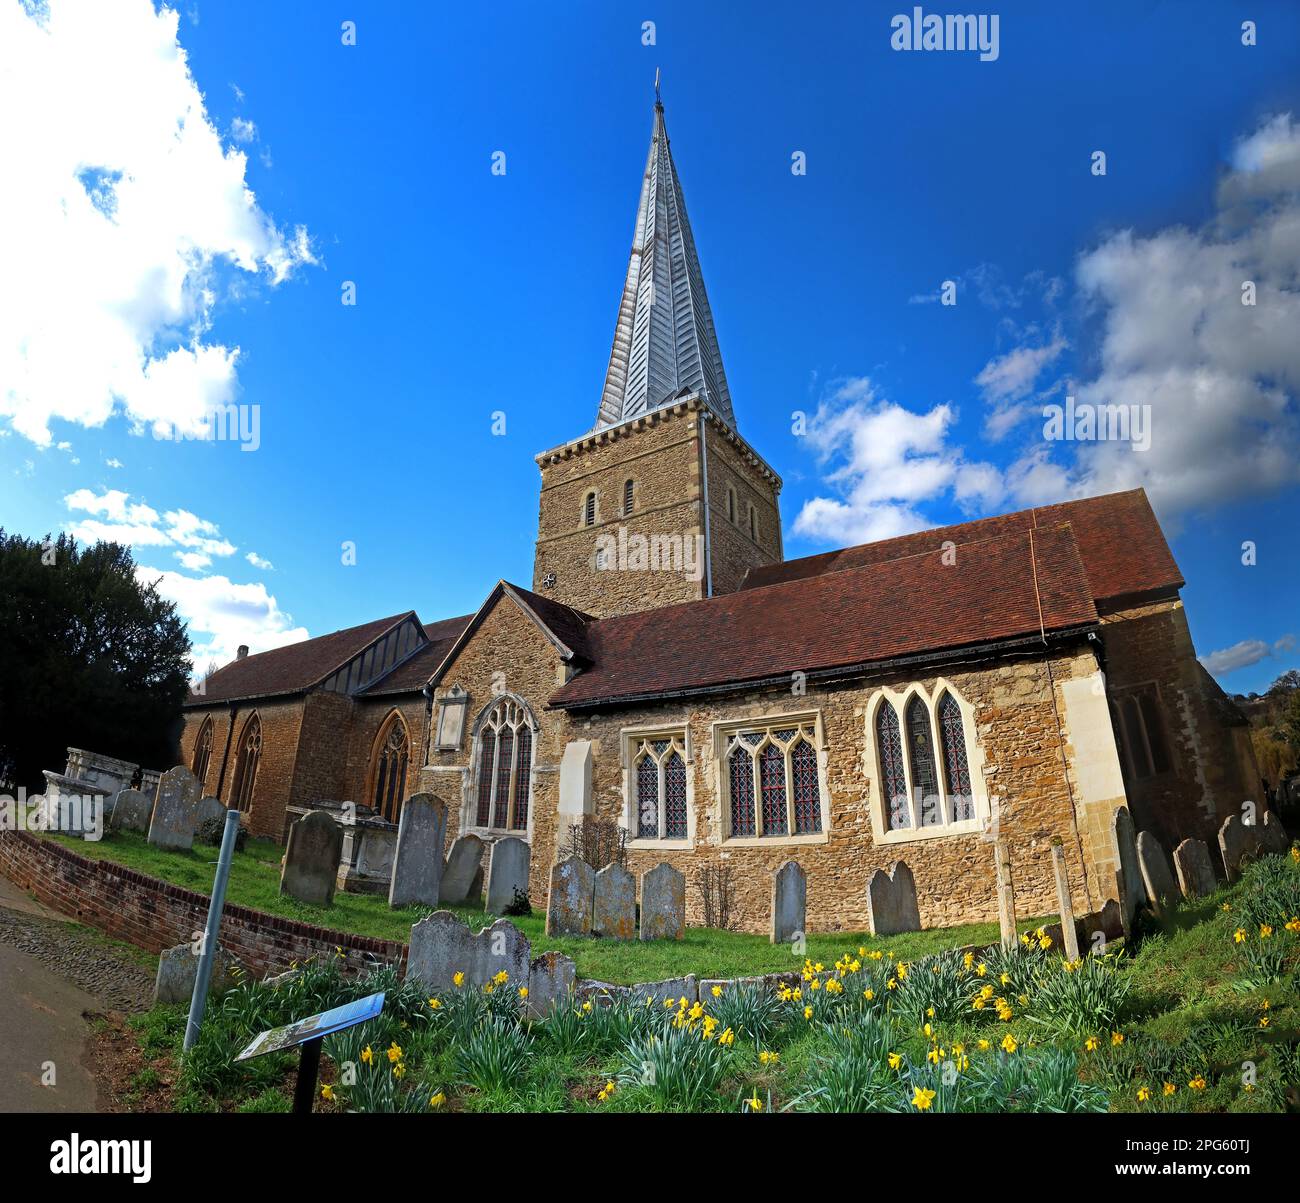 St Peter & Paul Sandstone Church, Borough Rd, Godalming, Surrey, Angleterre, Royaume-Uni, GU7 2AG - bâtiment classé de catégorie I Banque D'Images